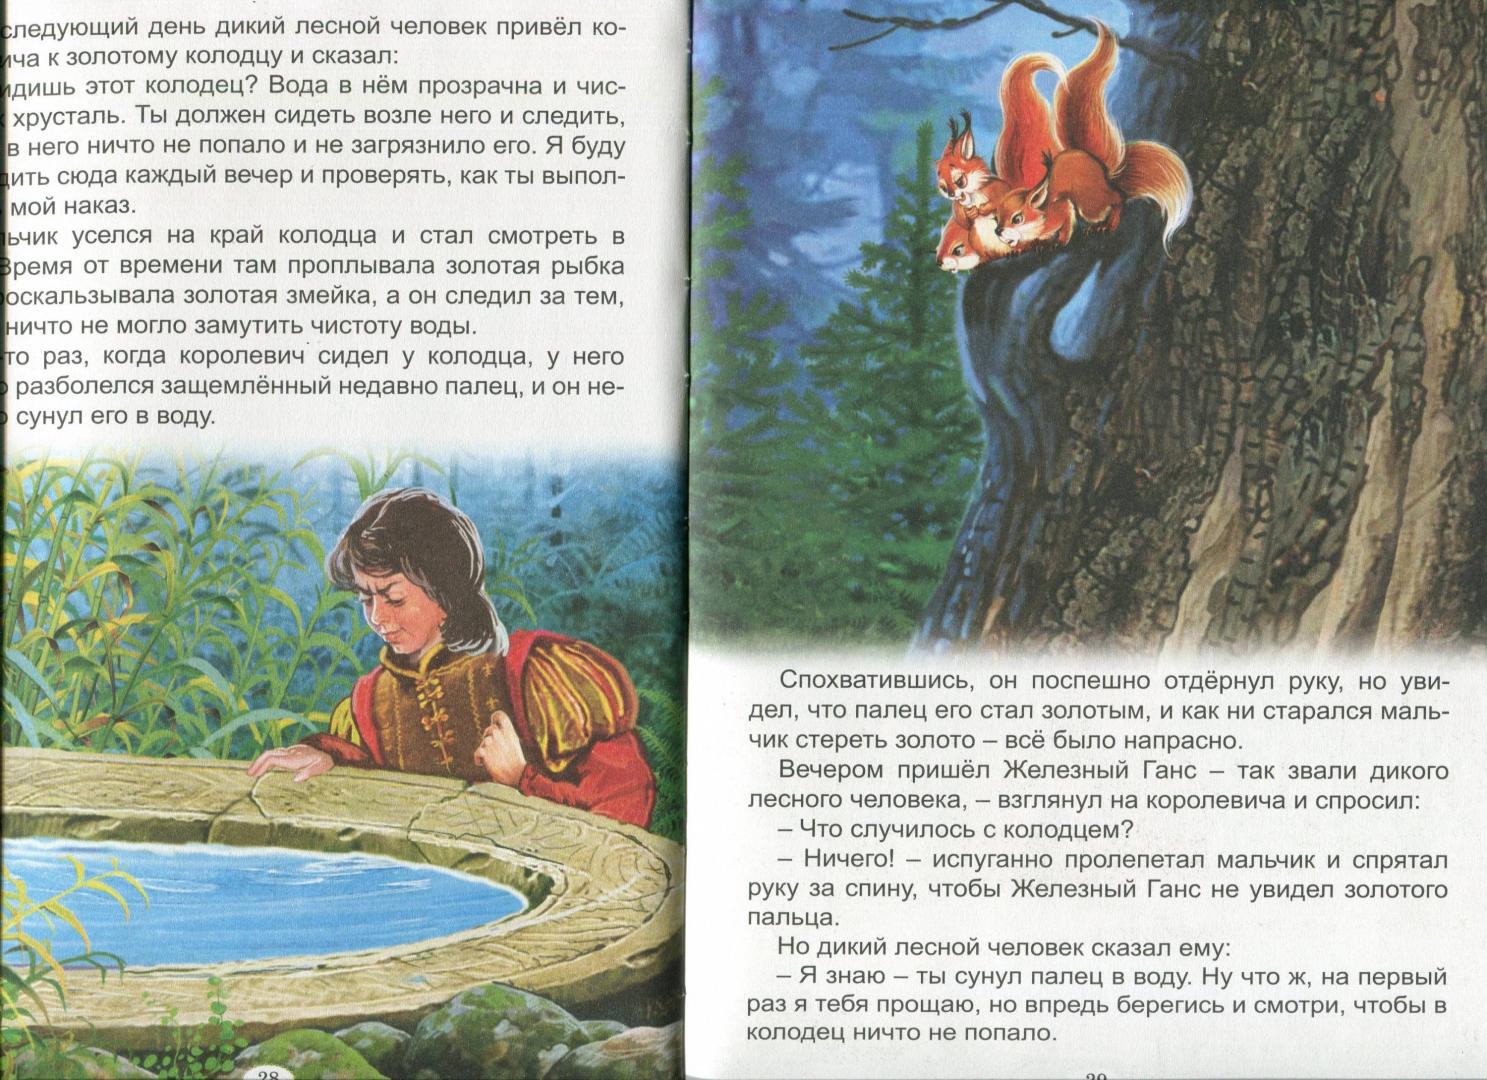 Иллюстрация 18 из 27 для Королевские сказки - Гримм, Андерсен, Лабулэ | Лабиринт - книги. Источник: Лабиринт